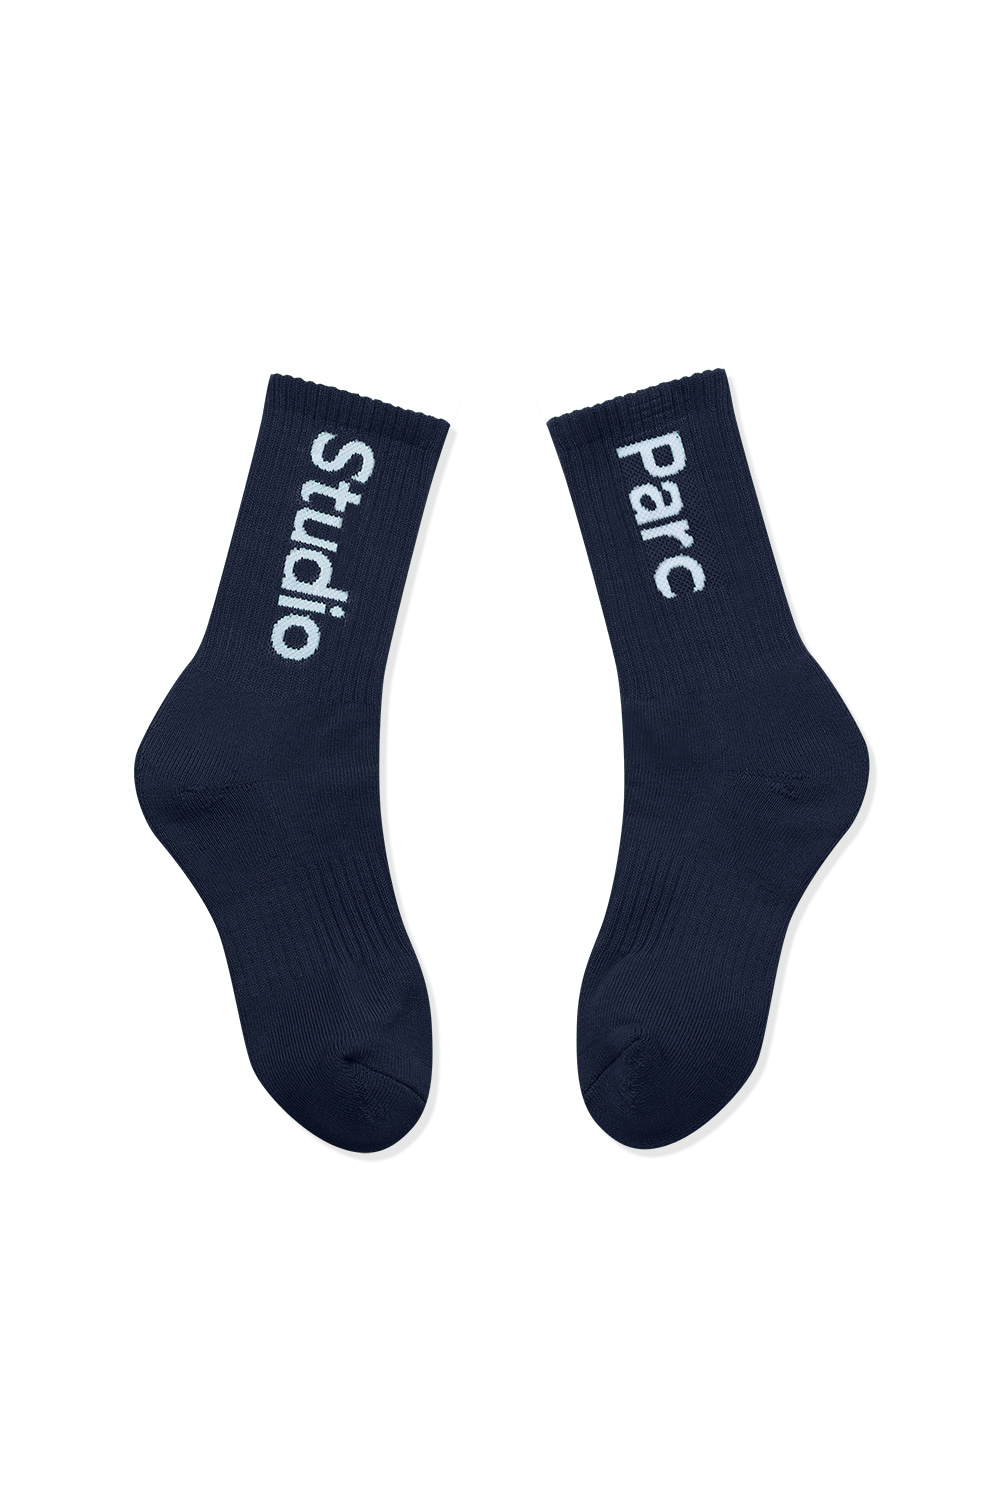 (UNI) Sceaux Socks 2_Navy